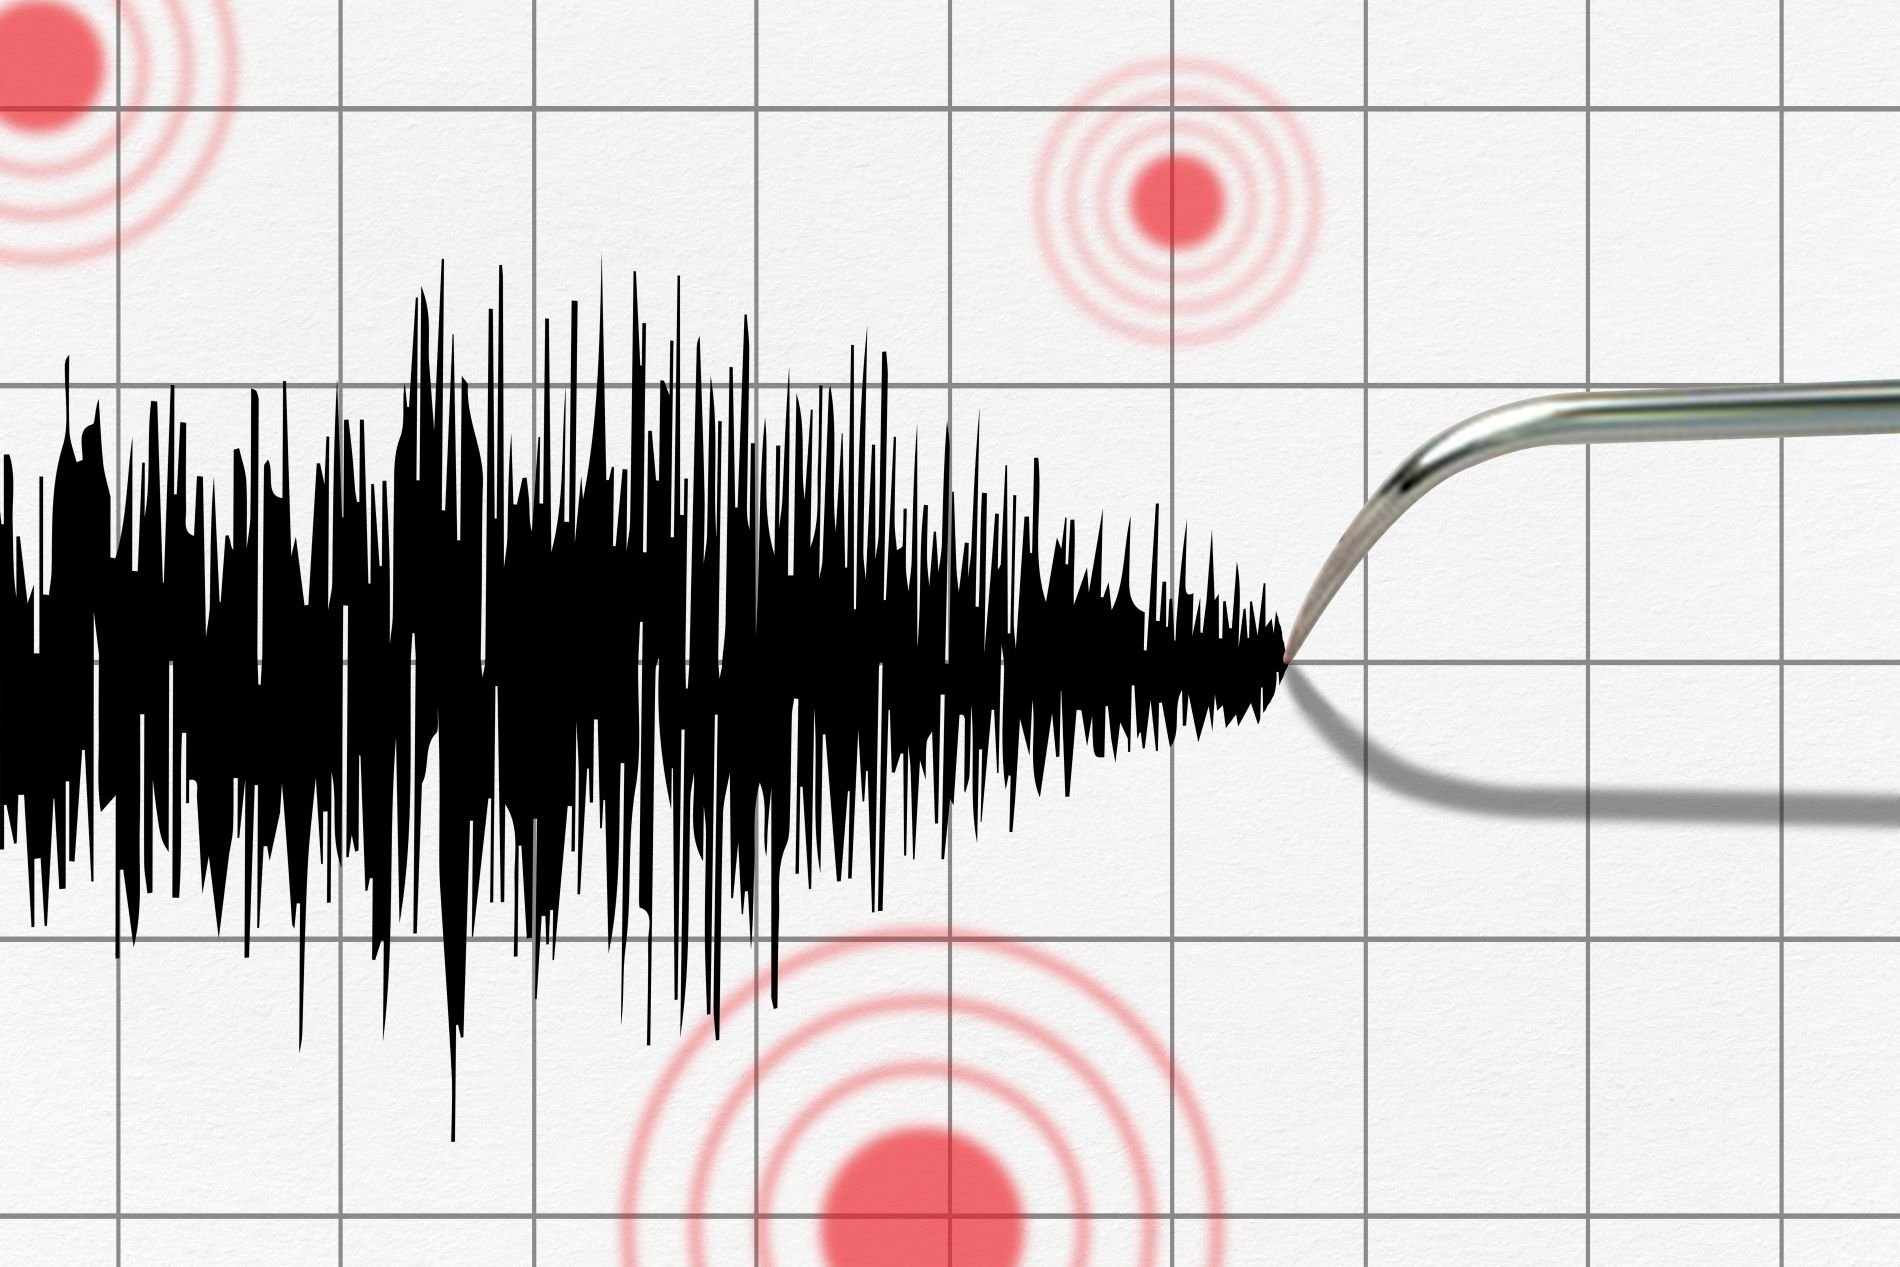 ταϊβάν: σεισμός 6,1 βαθμών στην επαρχία χουαλιέν- αισθητός και στο ταϊπέι